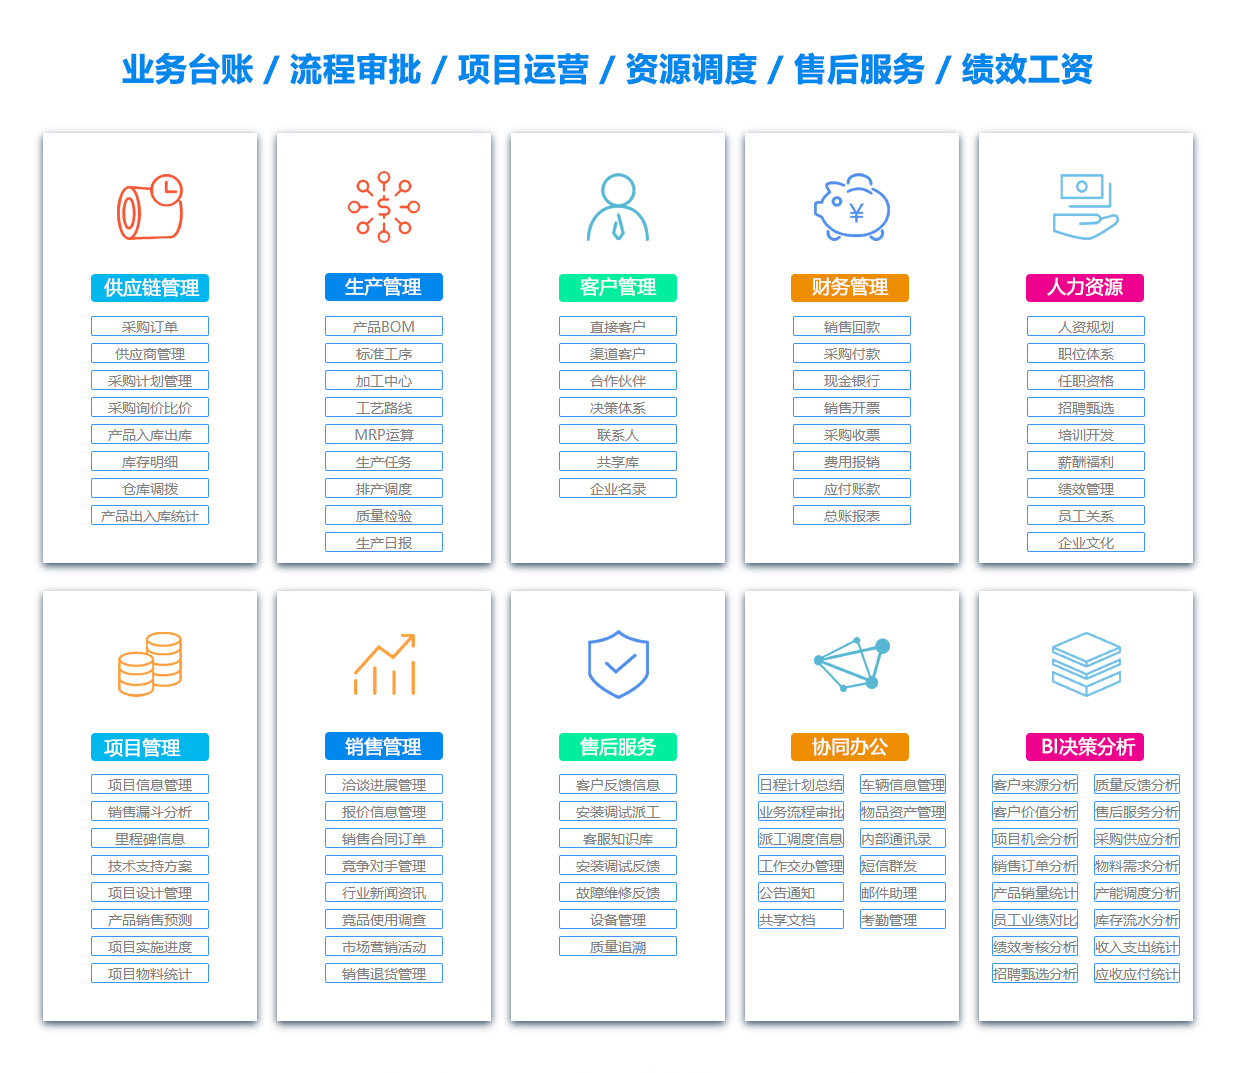 上海客户资料管理系统